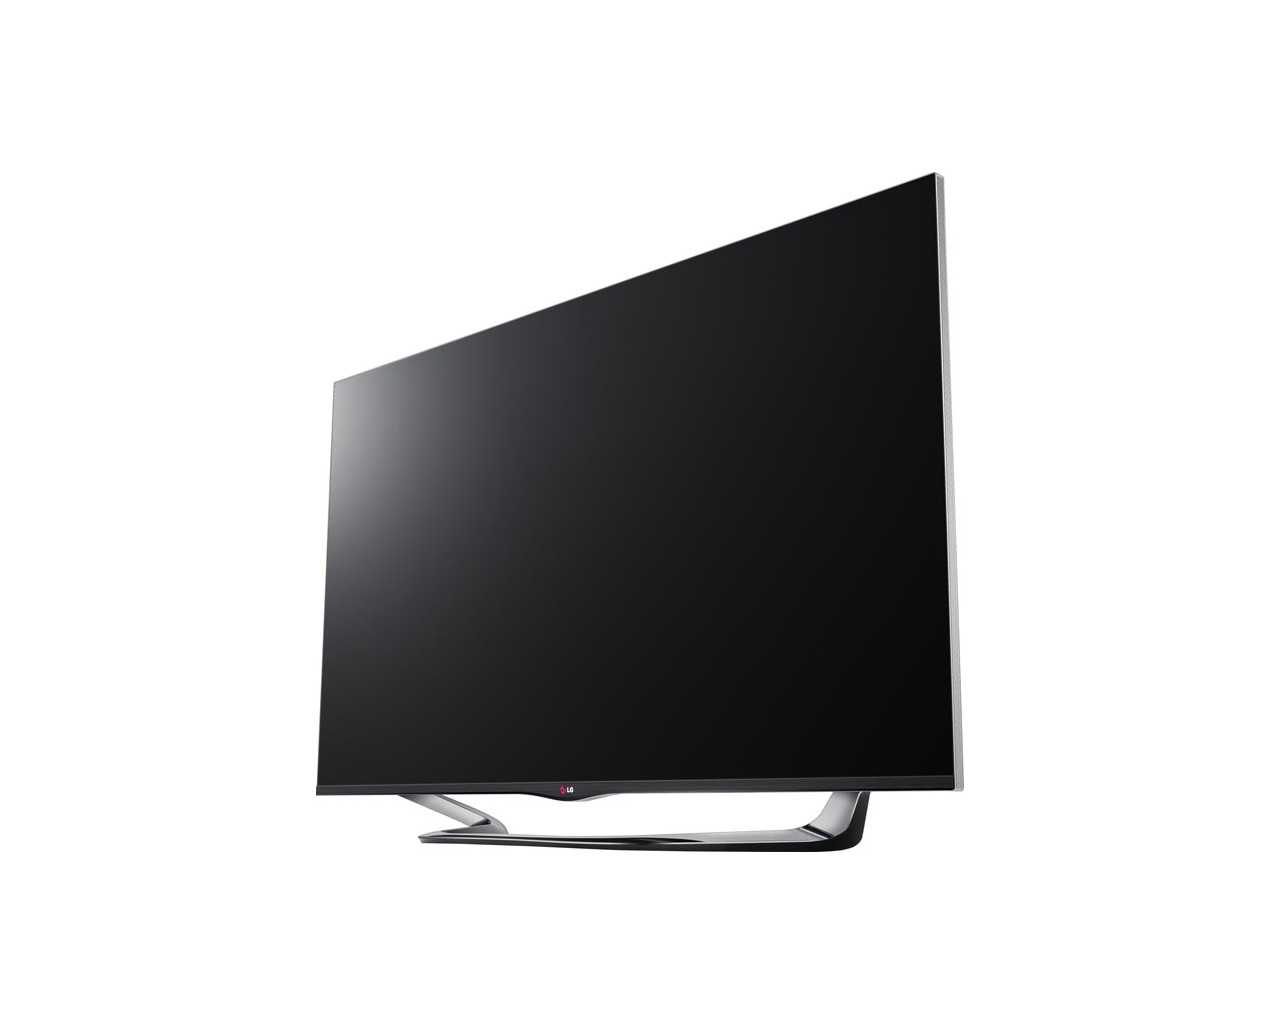 Lg 42la690s - купить , скидки, цена, отзывы, обзор, характеристики - телевизоры